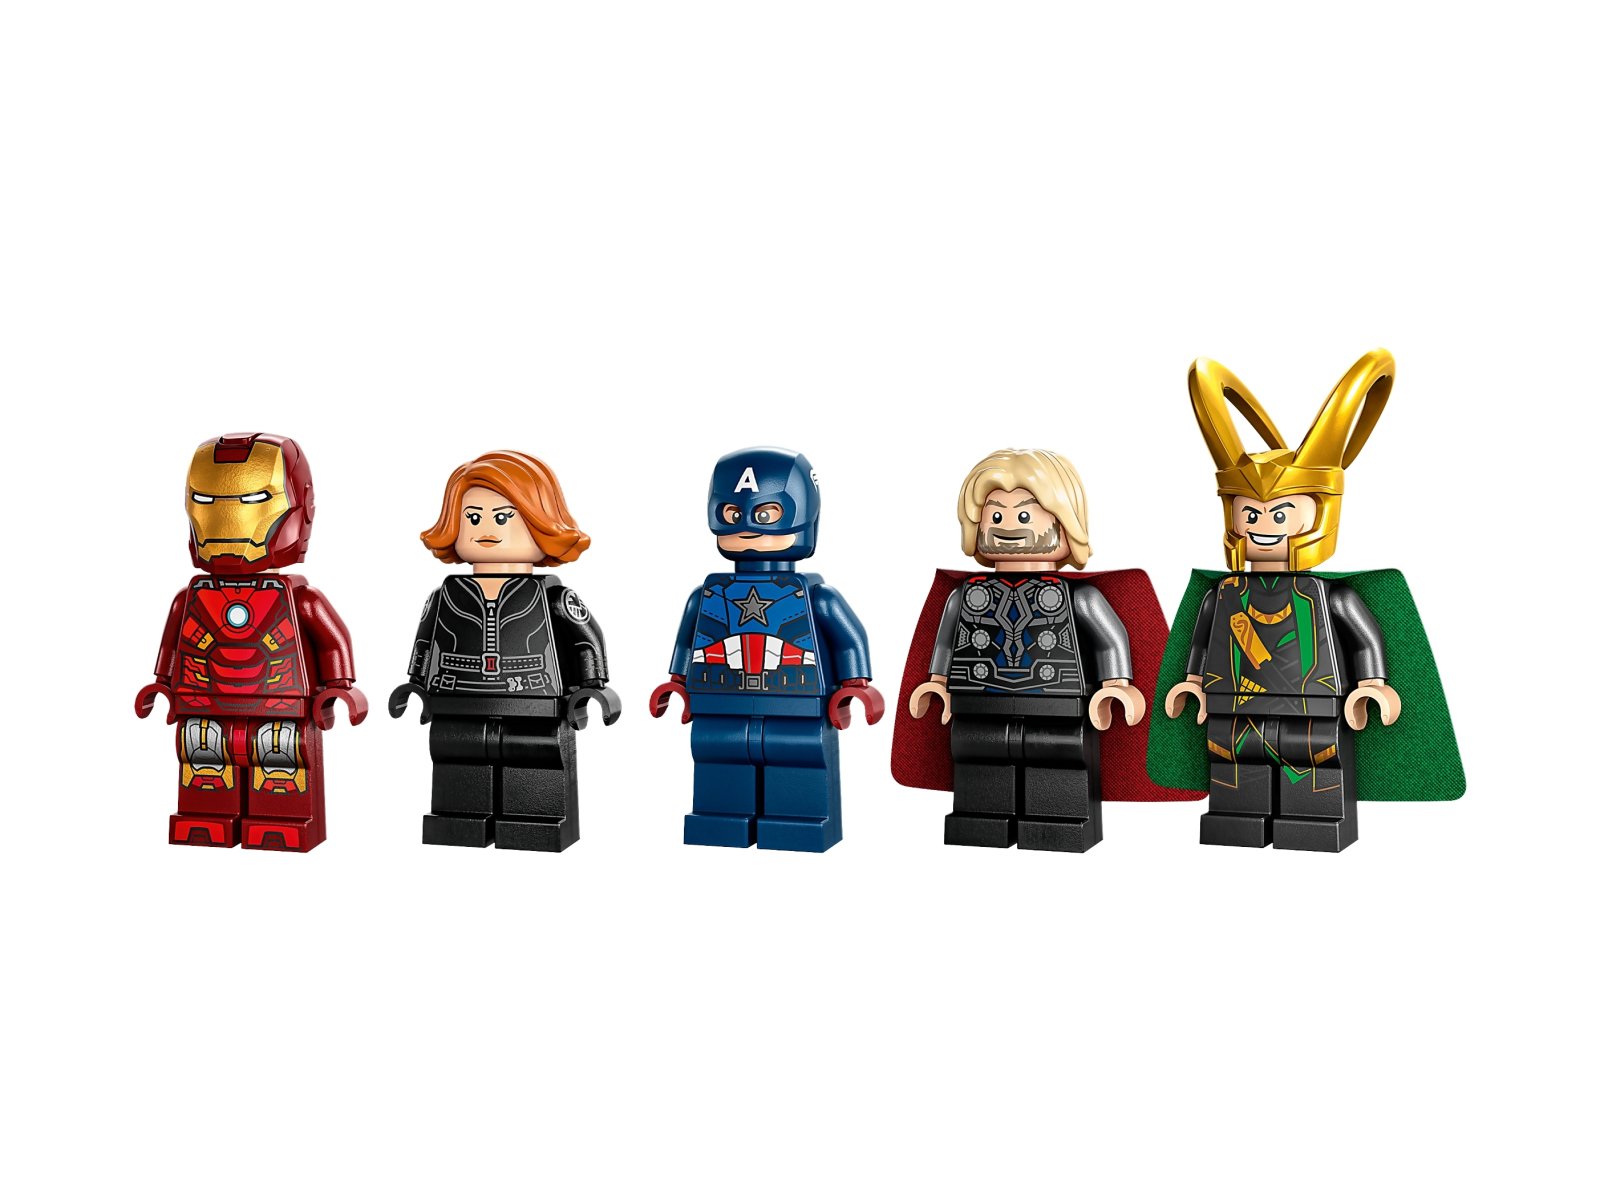 LEGO Marvel Quinjet Avengersów 76248